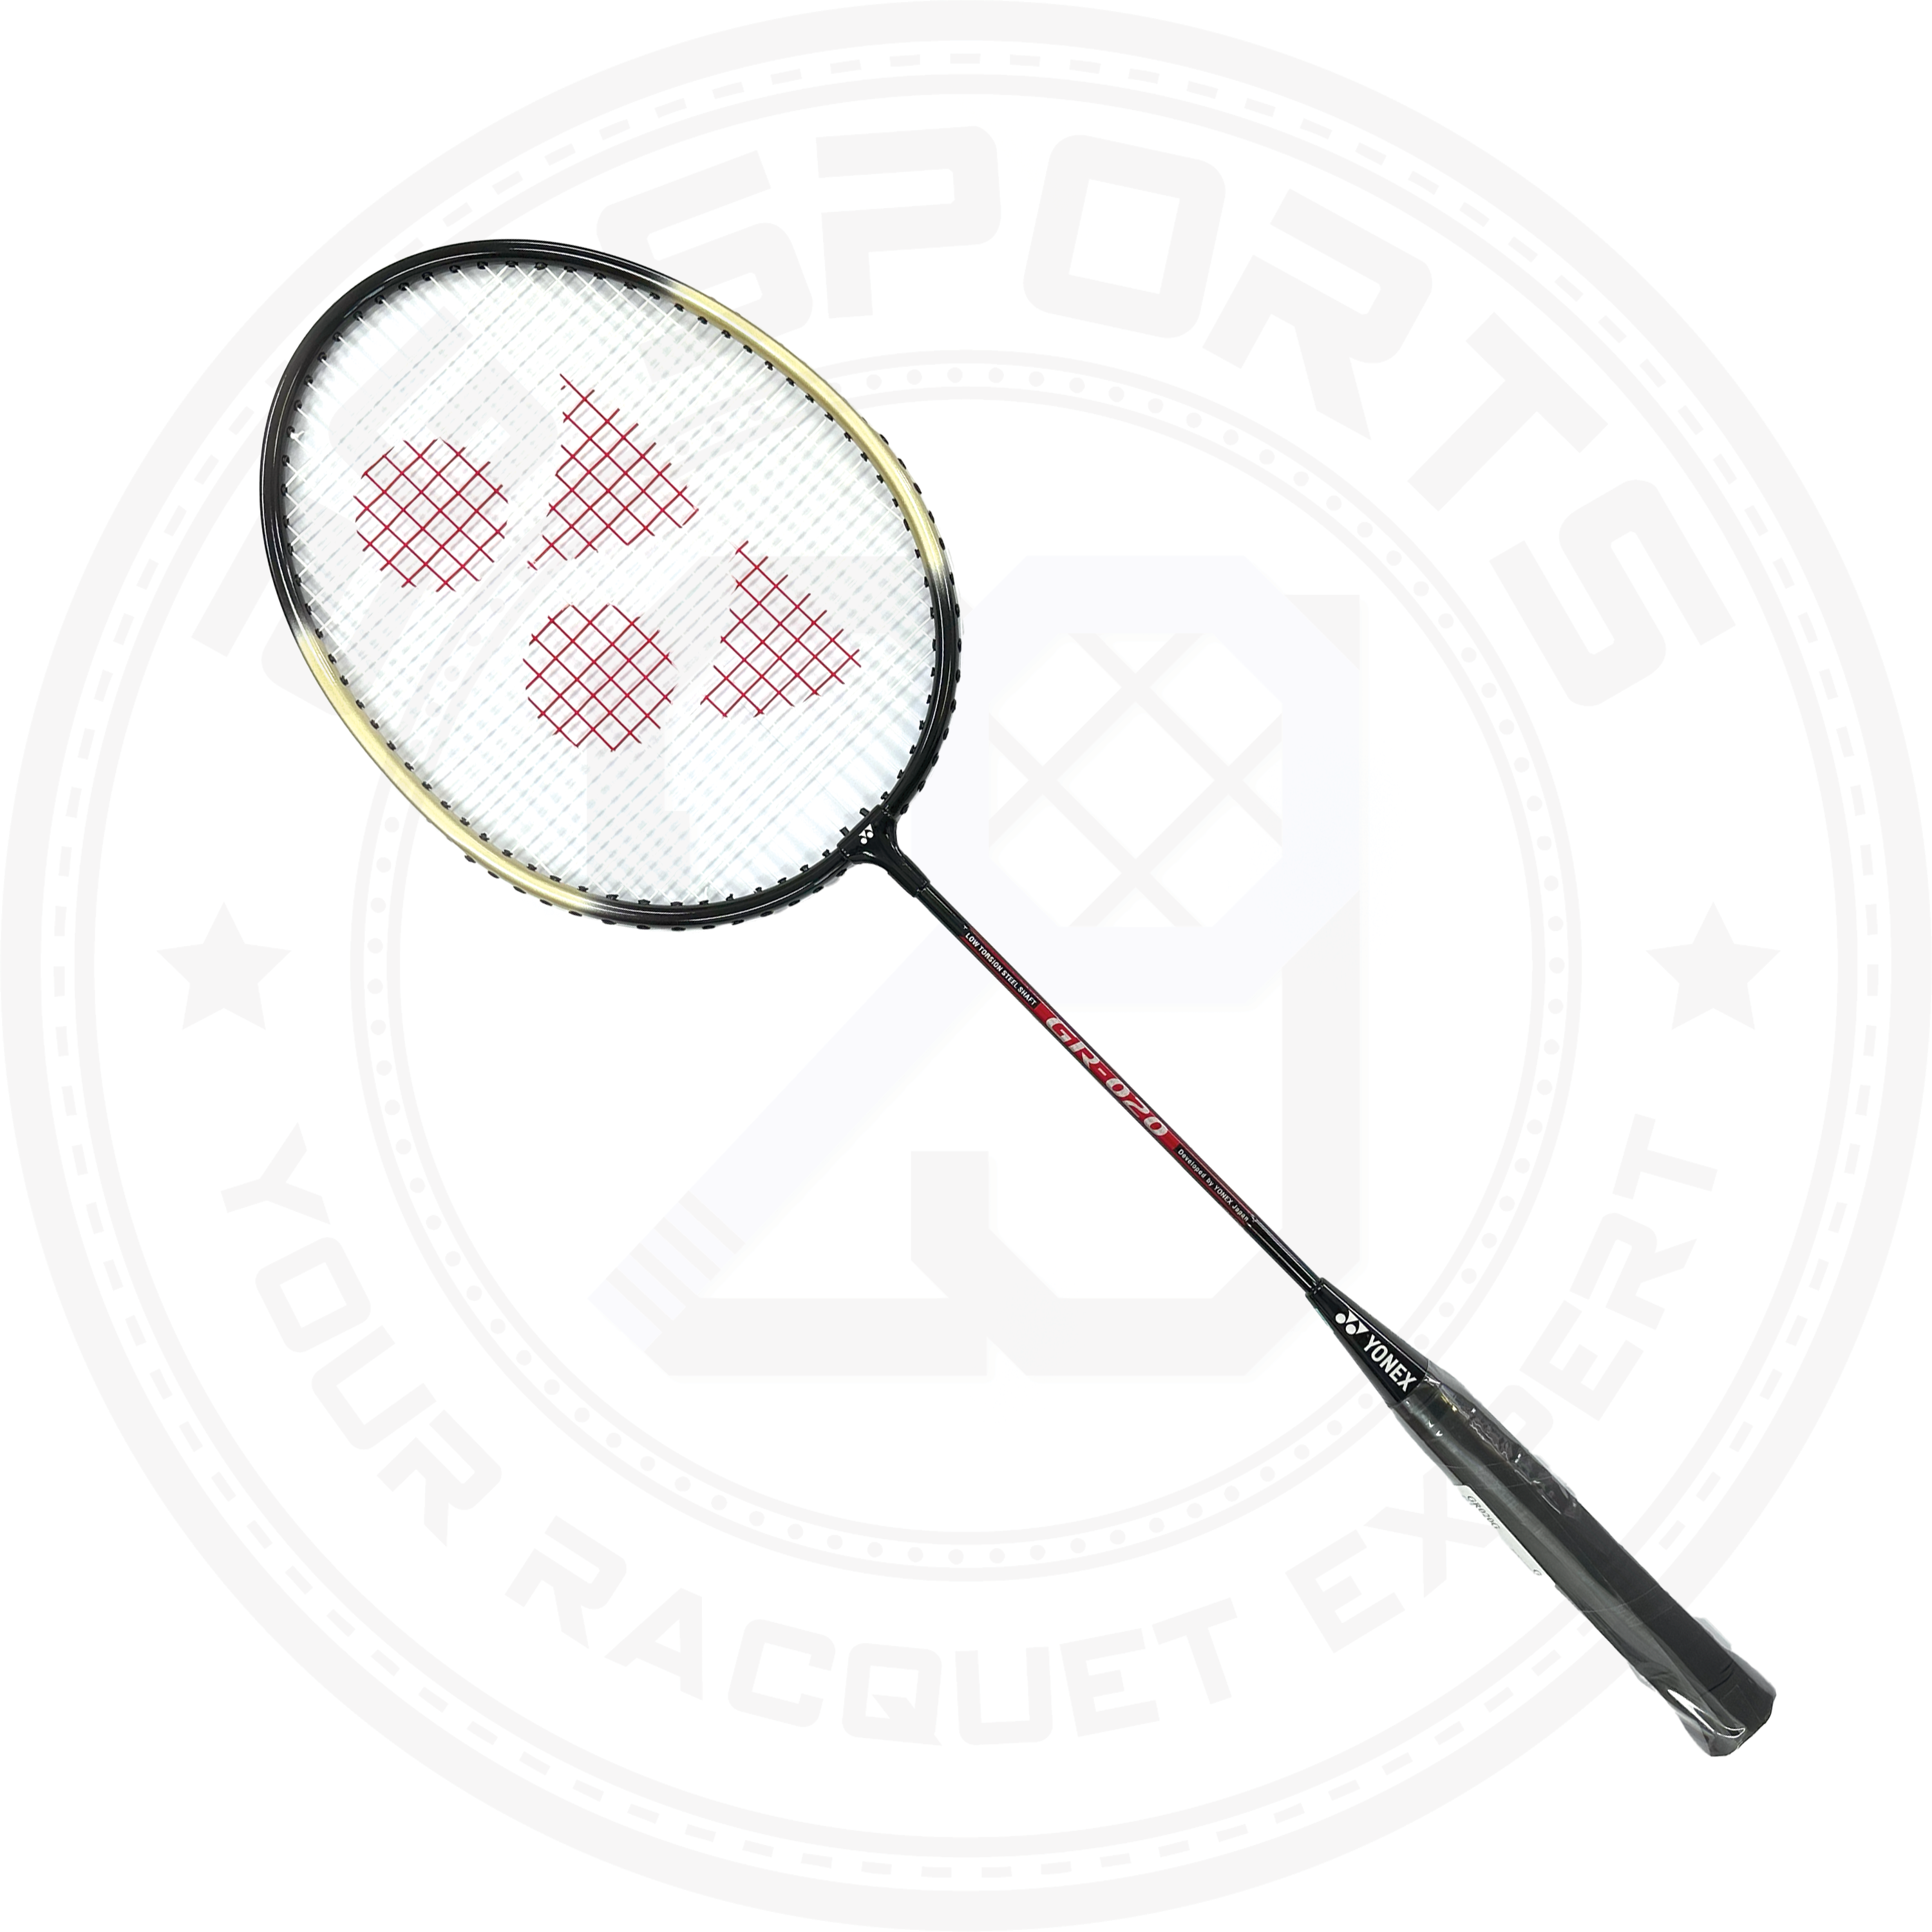 Yonex GR020 Badminton Racquet Black/ Gold (Ready to Go)